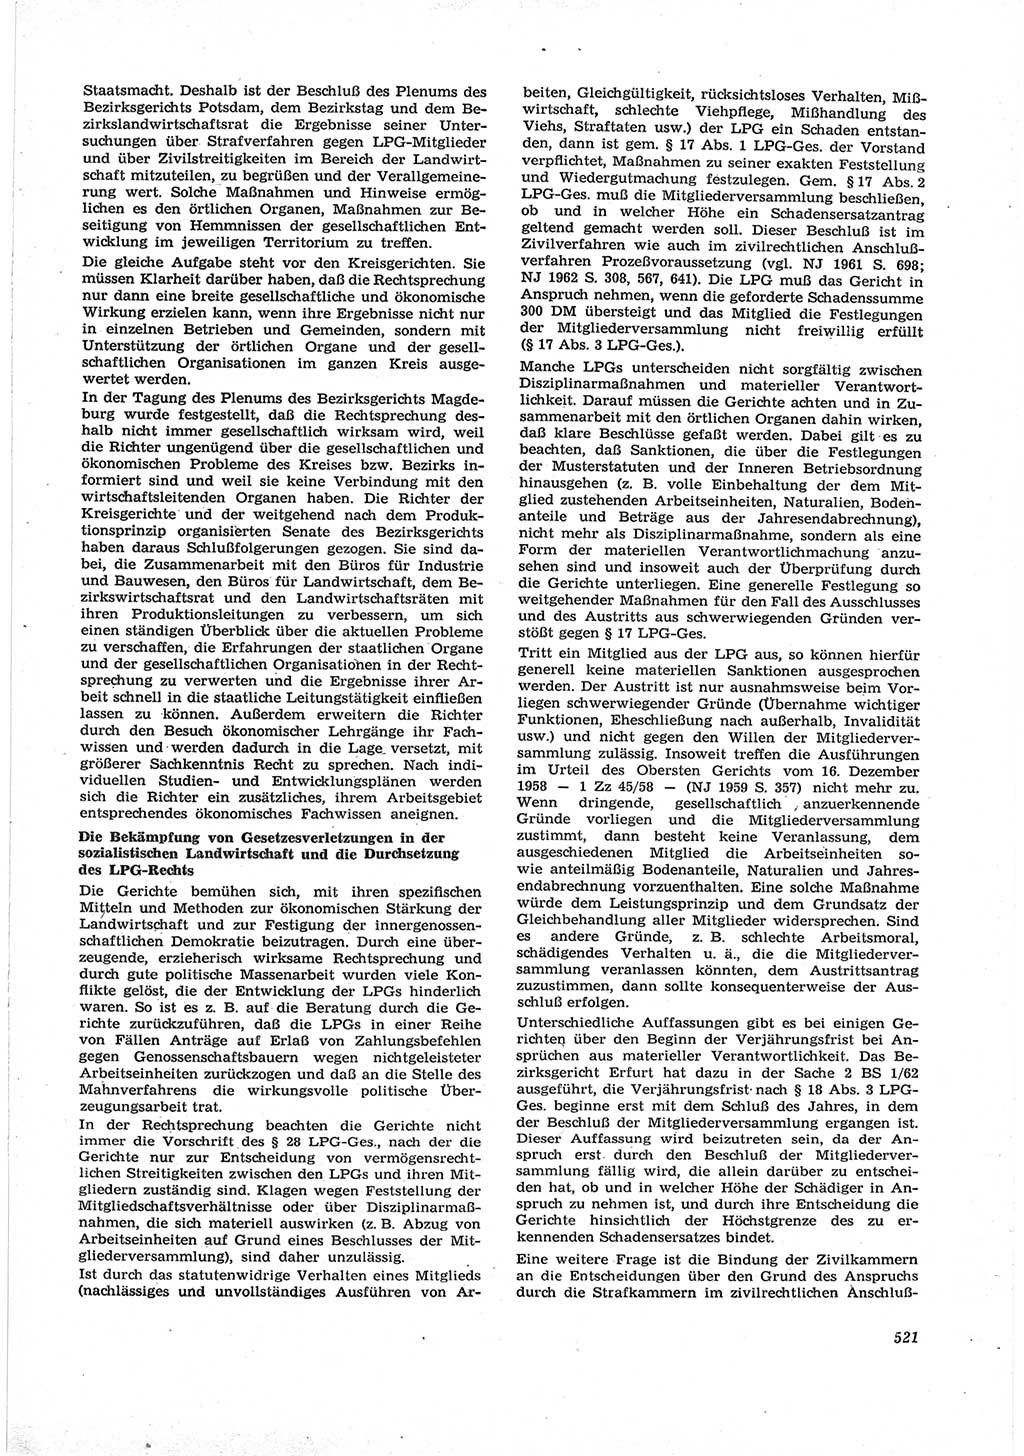 Neue Justiz (NJ), Zeitschrift für Recht und Rechtswissenschaft [Deutsche Demokratische Republik (DDR)], 17. Jahrgang 1963, Seite 521 (NJ DDR 1963, S. 521)